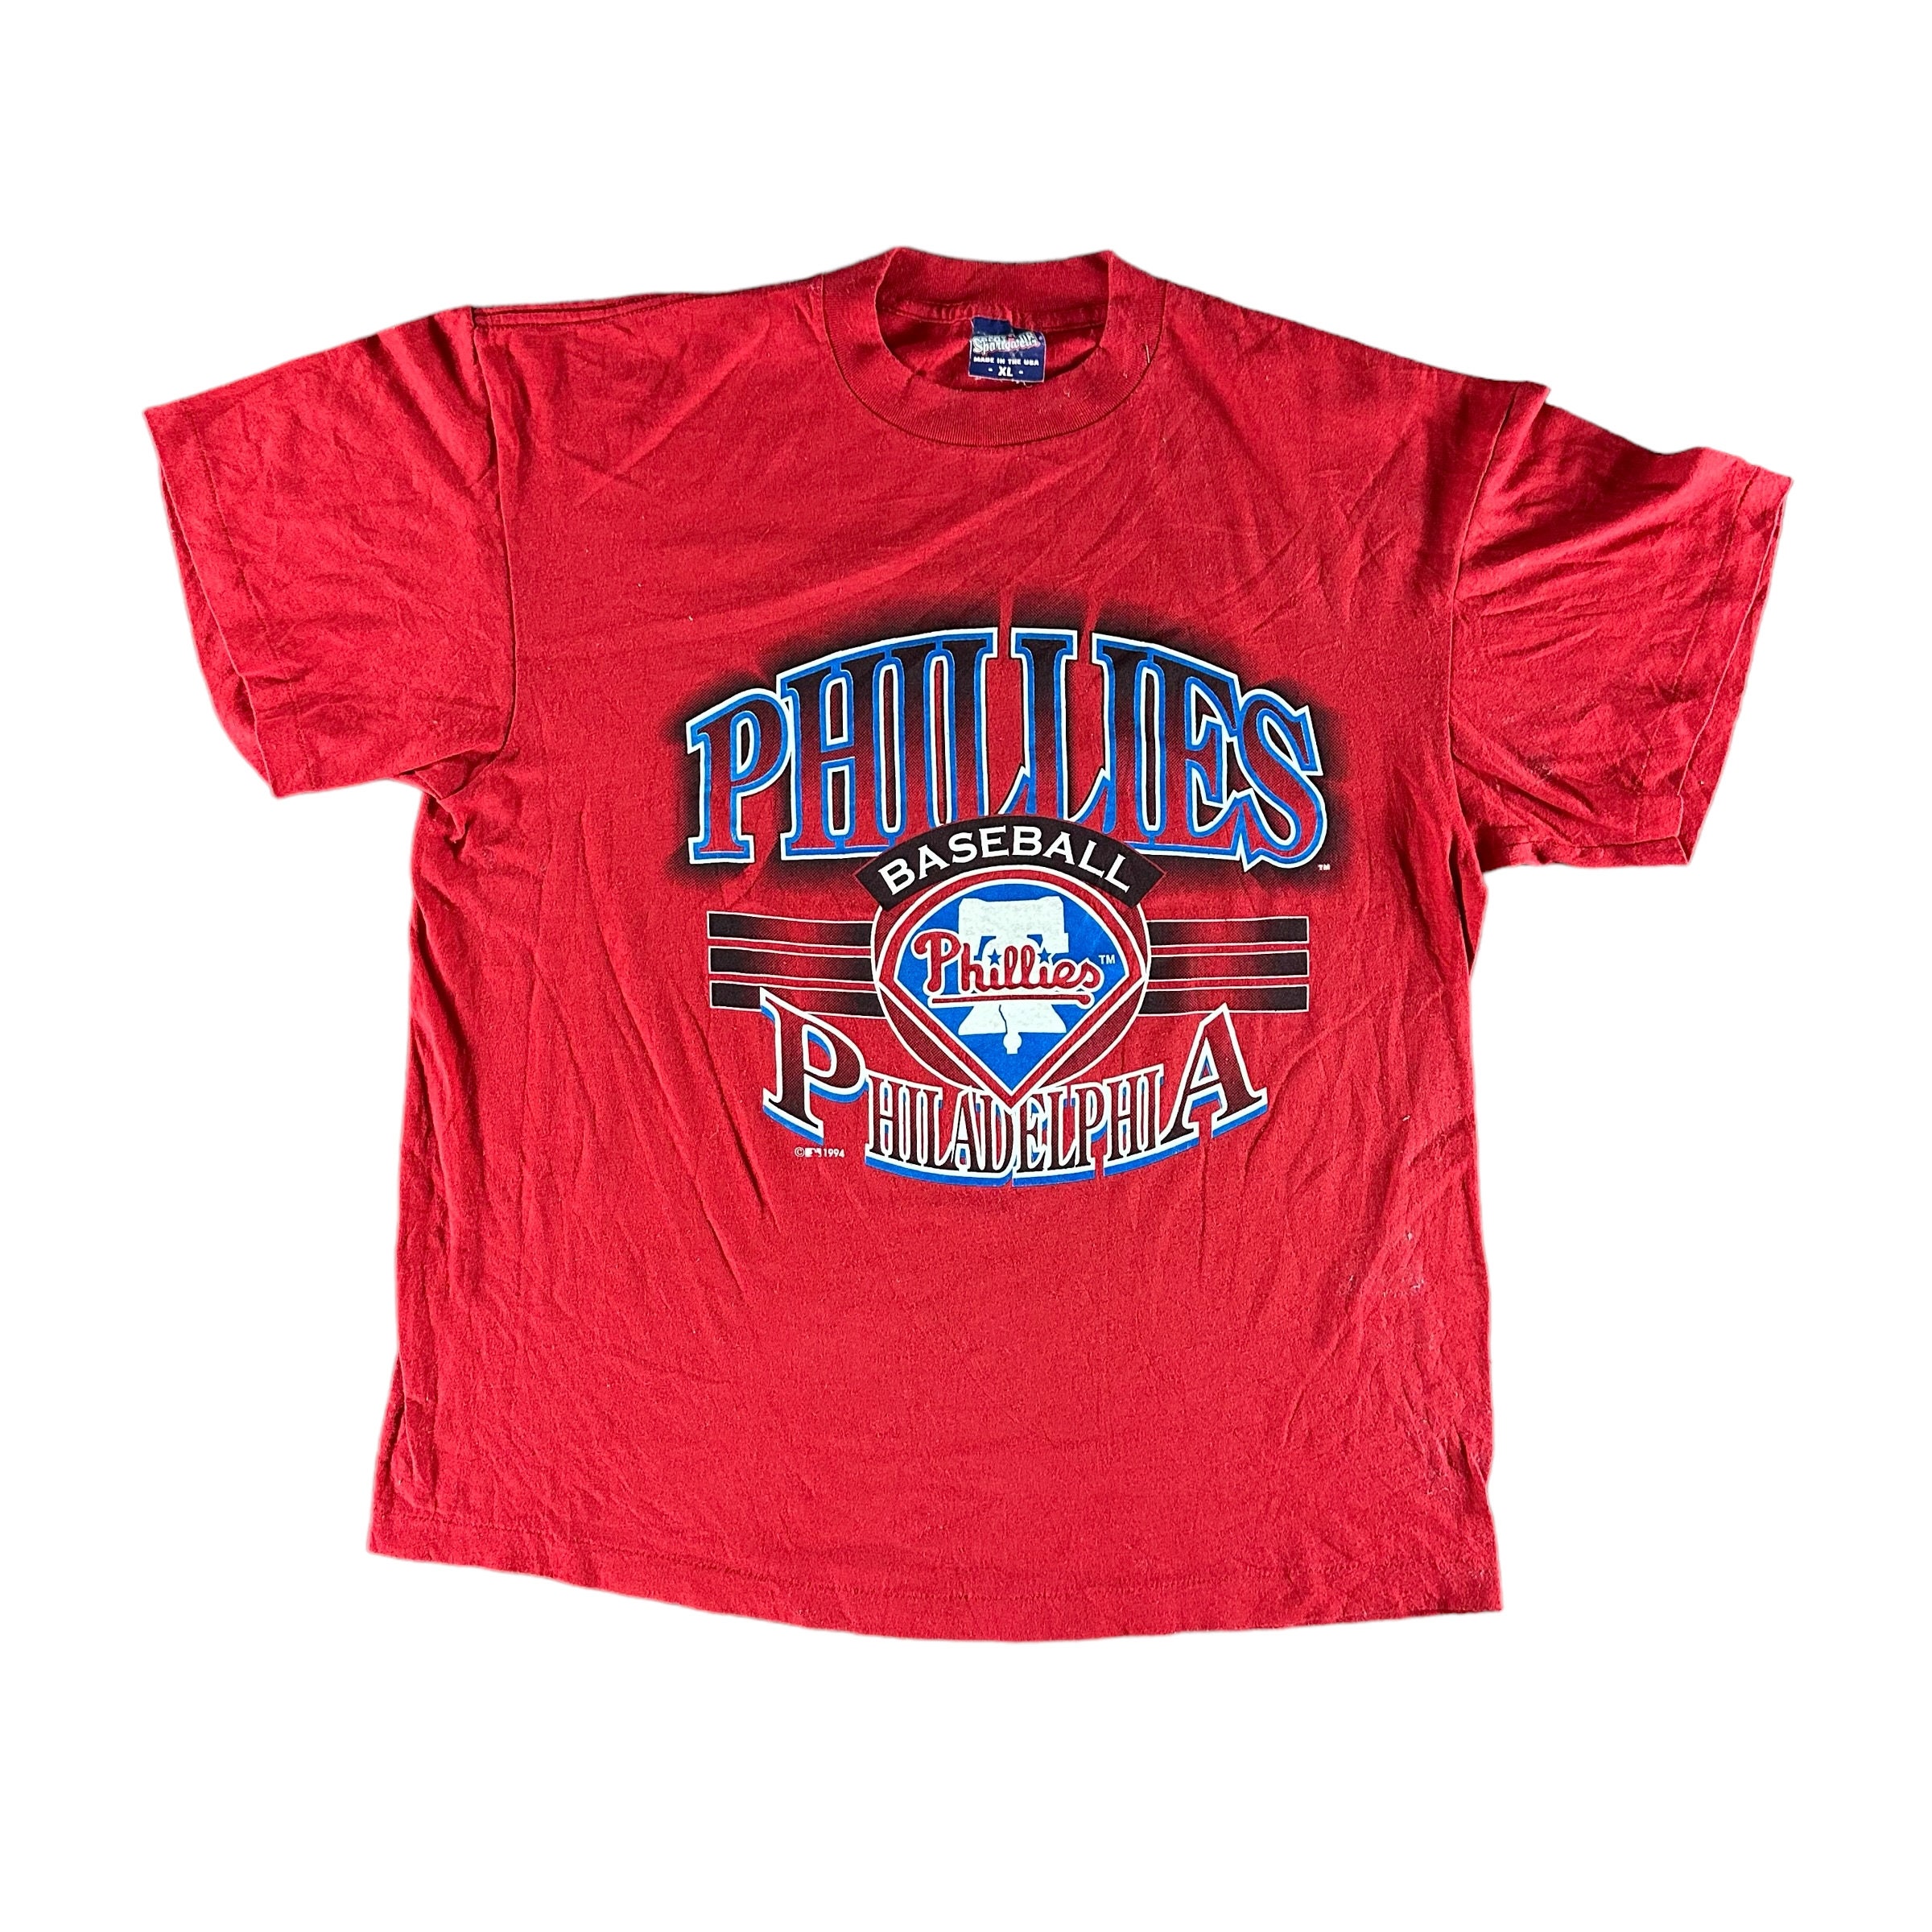 Kyle Schwarber Philadelphia Phillies retro 90s Lightning shirt